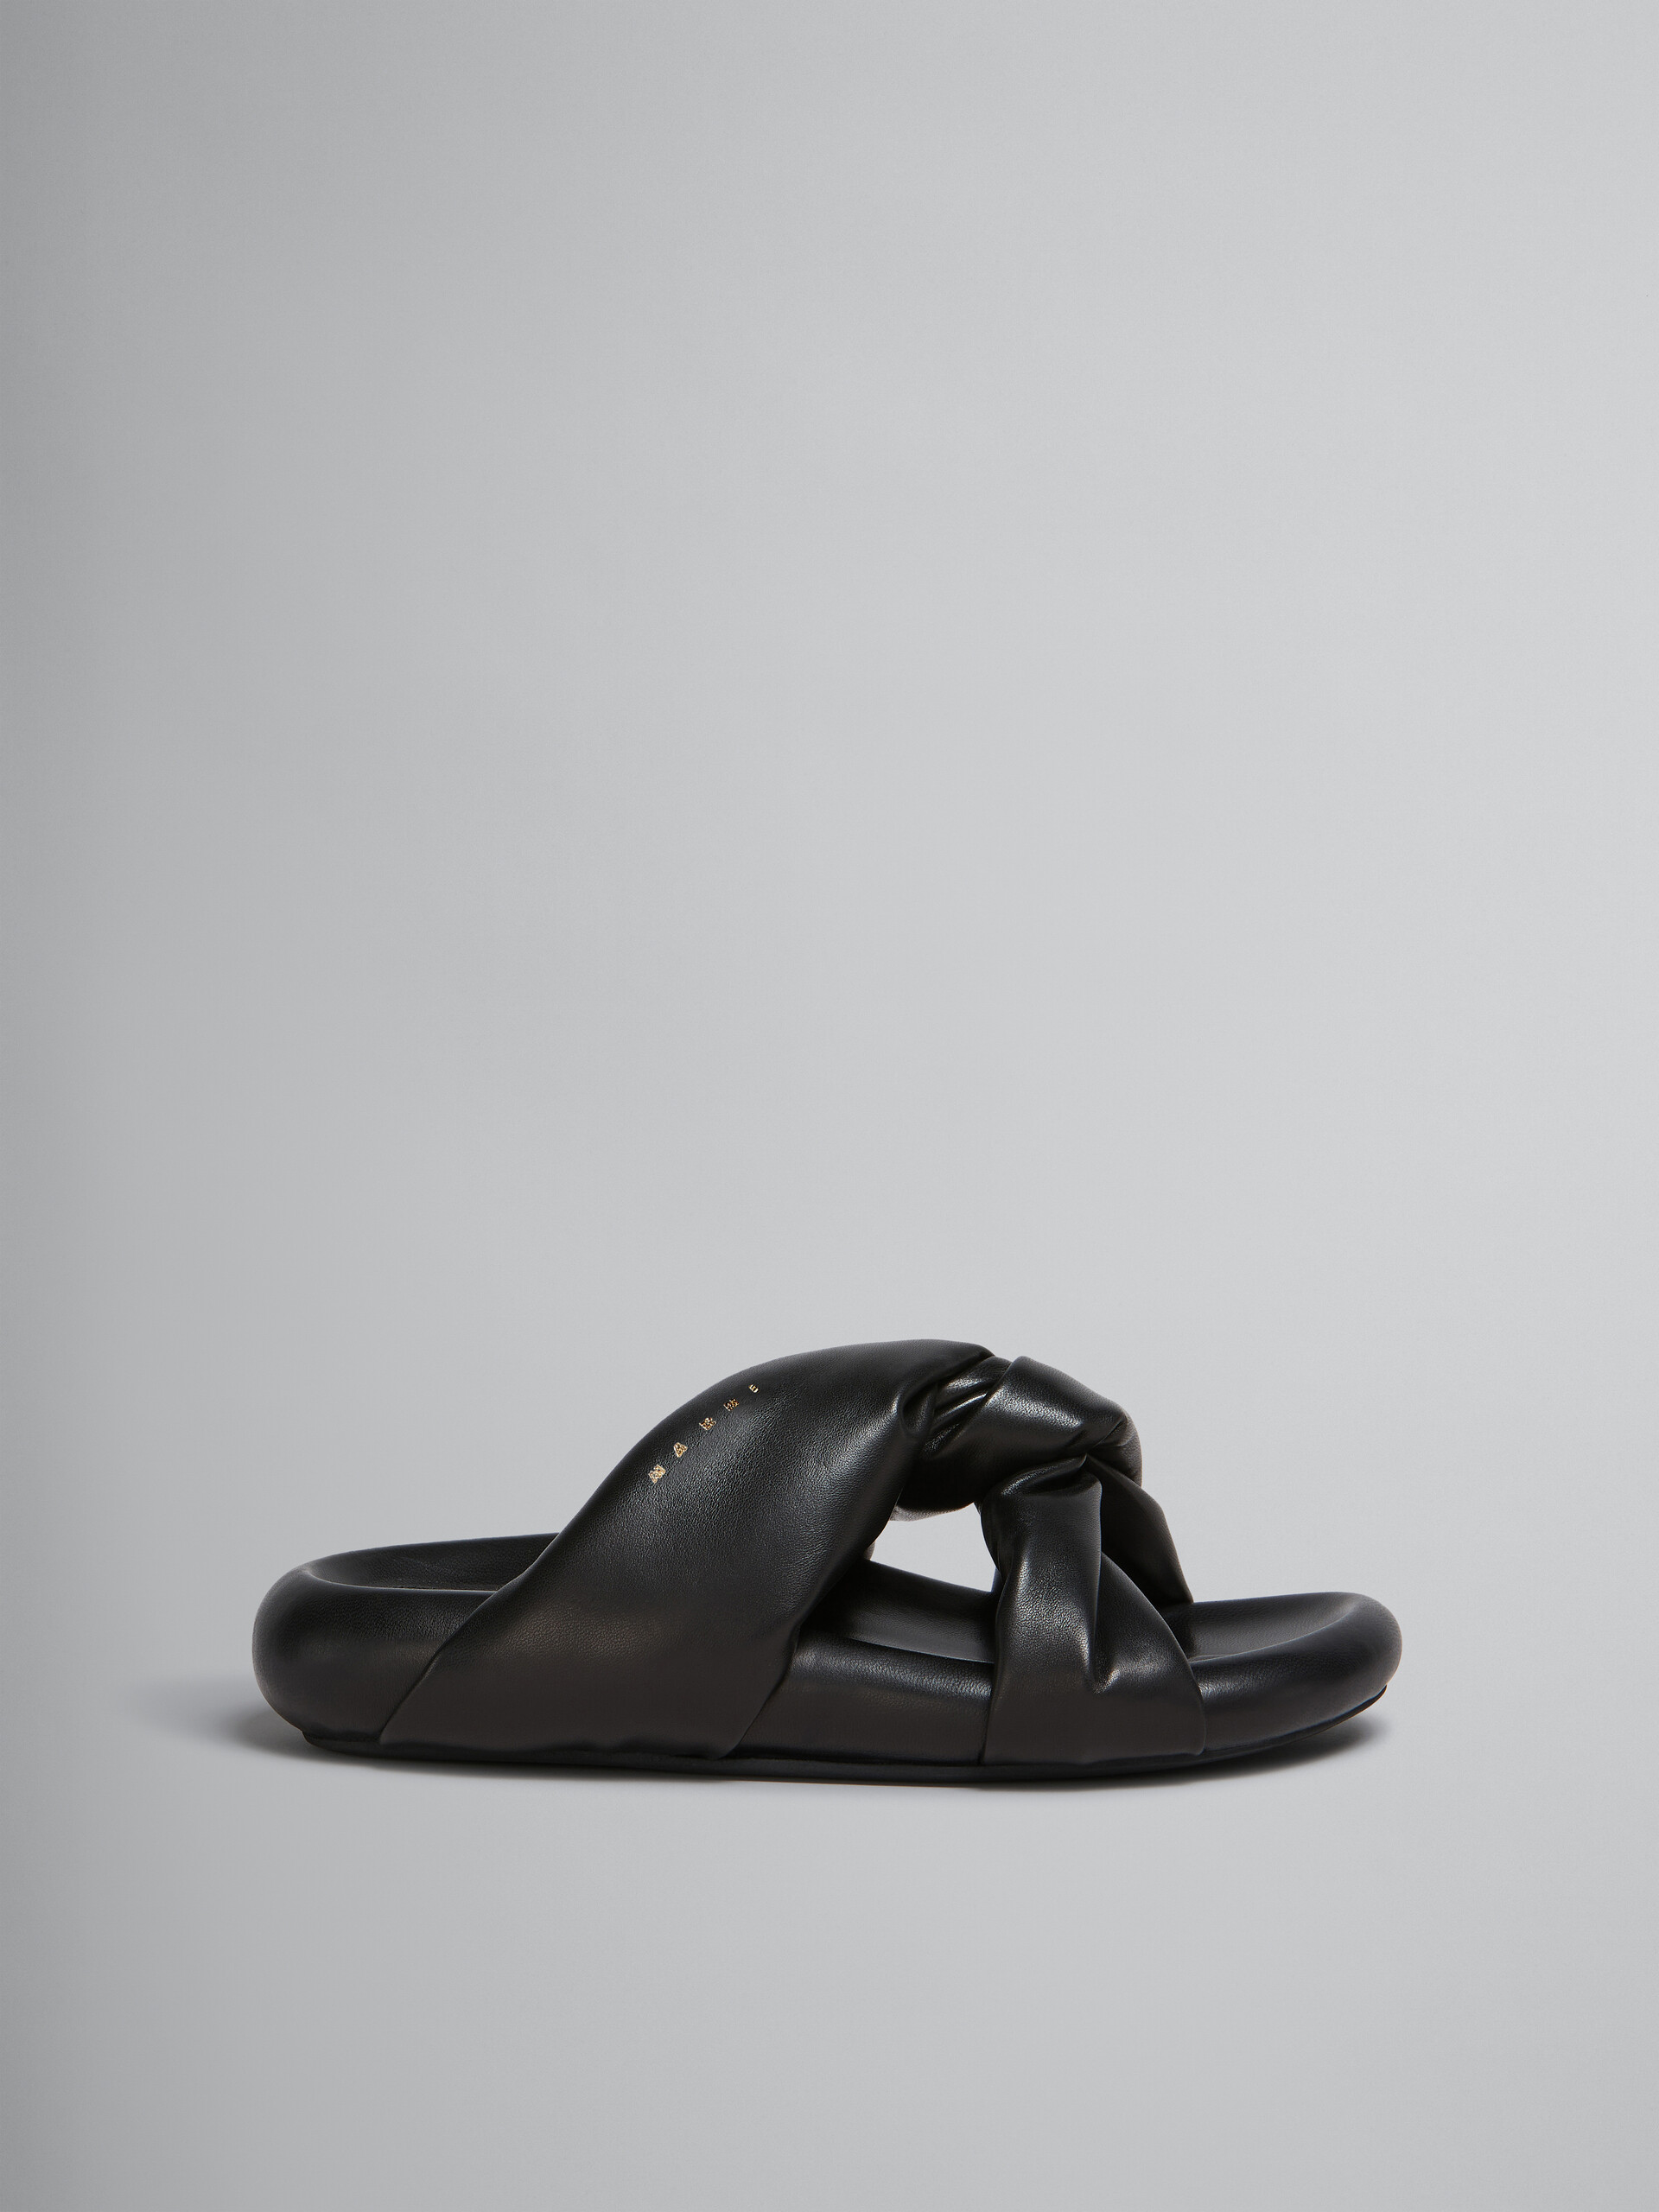 Sandalo Bubble con nodo in pelle nera - Sandali - Image 1